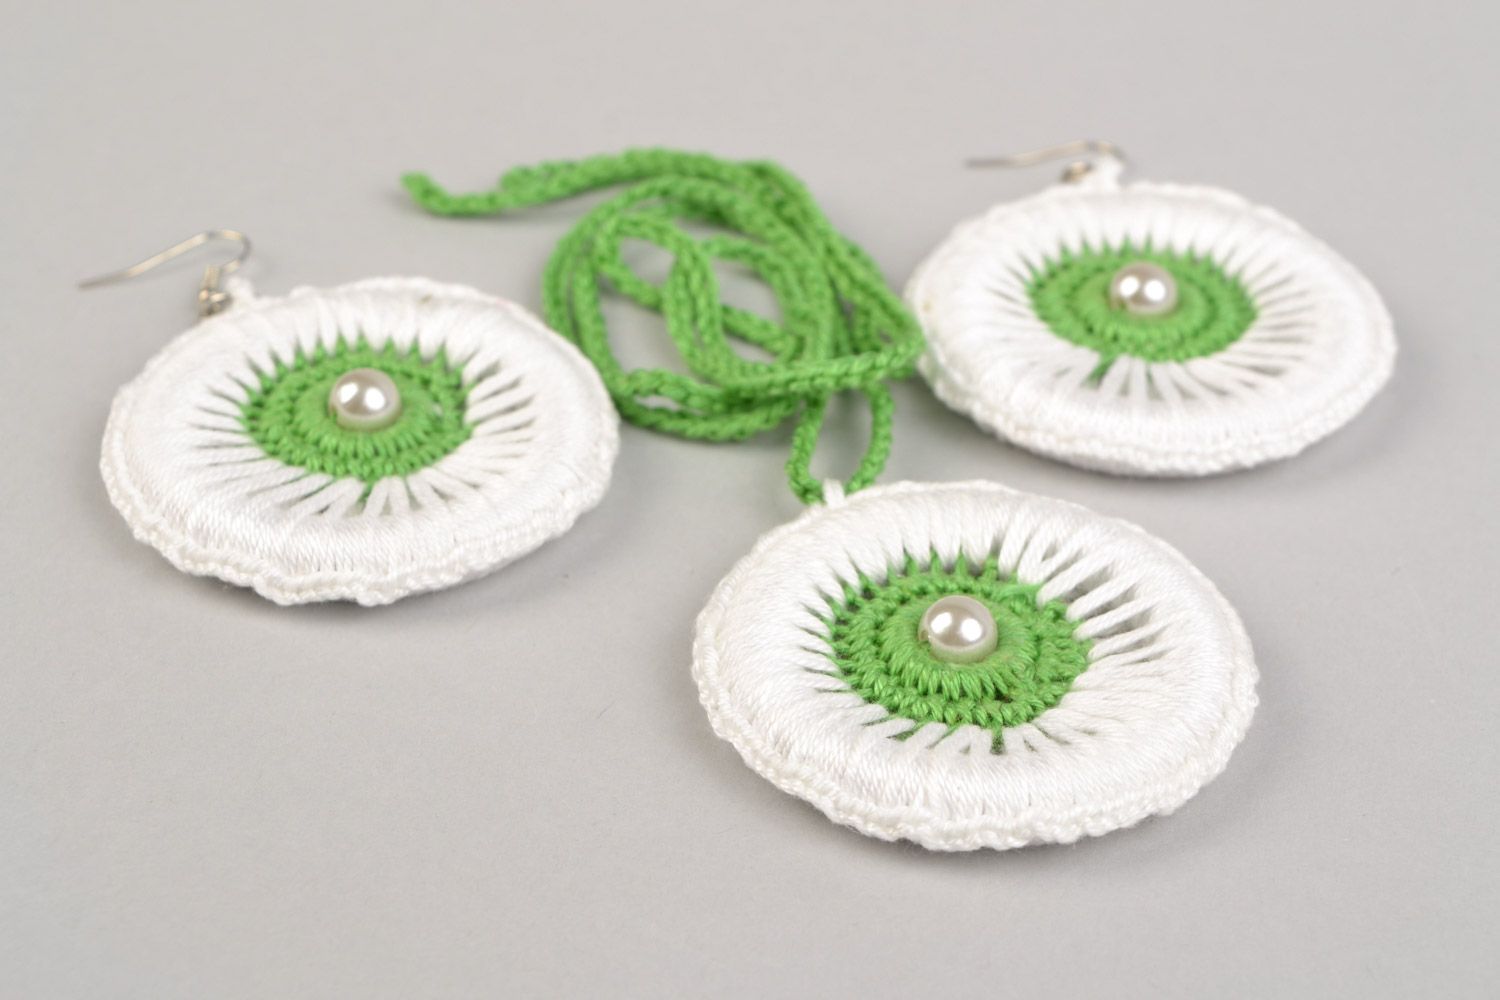 Textil Schmuckset Lange Ohrringe und 
Anhänger aus Fäden geflochten in Weiß und Grün handmade foto 3